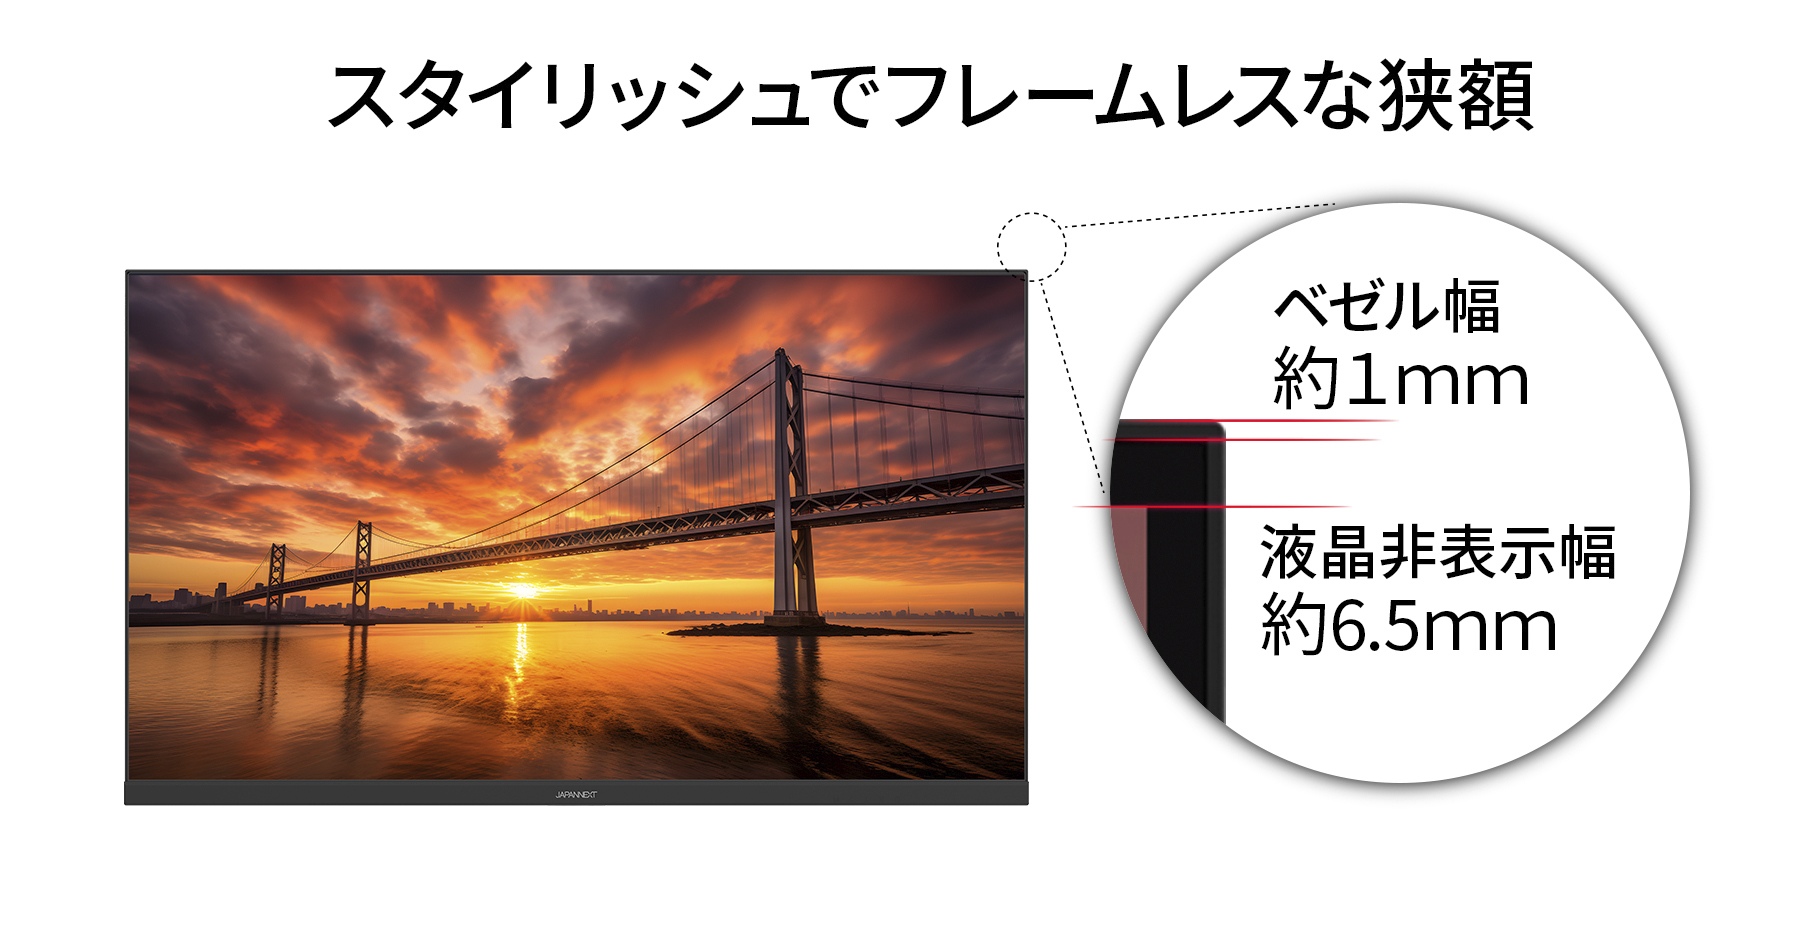 JAPANNEXT 31.5インチ 4K(3840 x 2160)液晶モニター JN-V3150UHDR-HSP